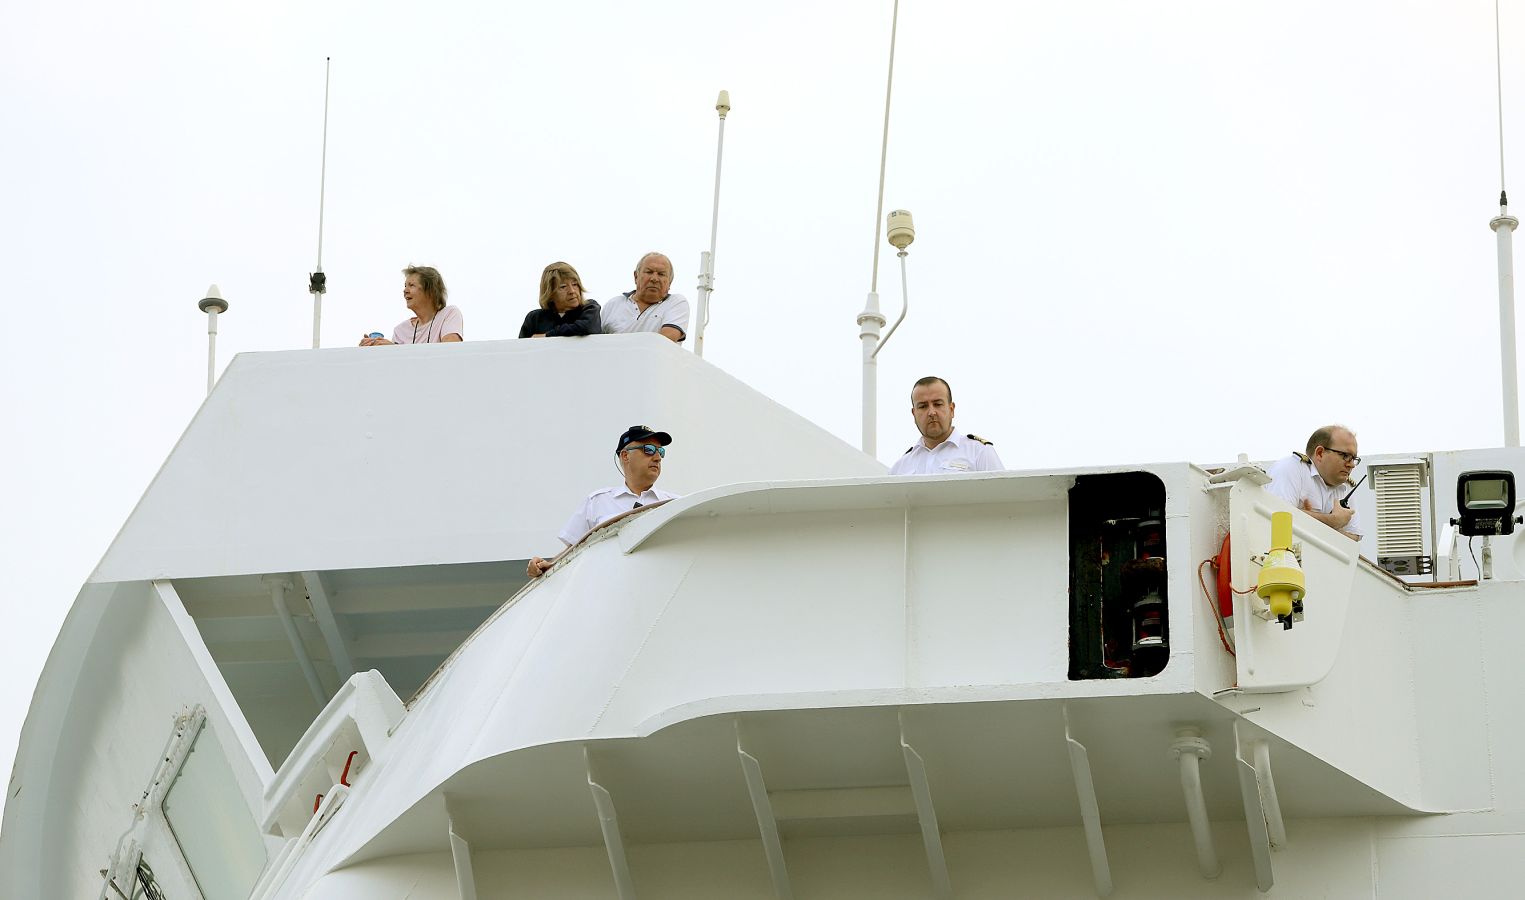 El lujoso Saga Pearl II ha atracado en el puerto de Pasaia este jueves 2 de agosto